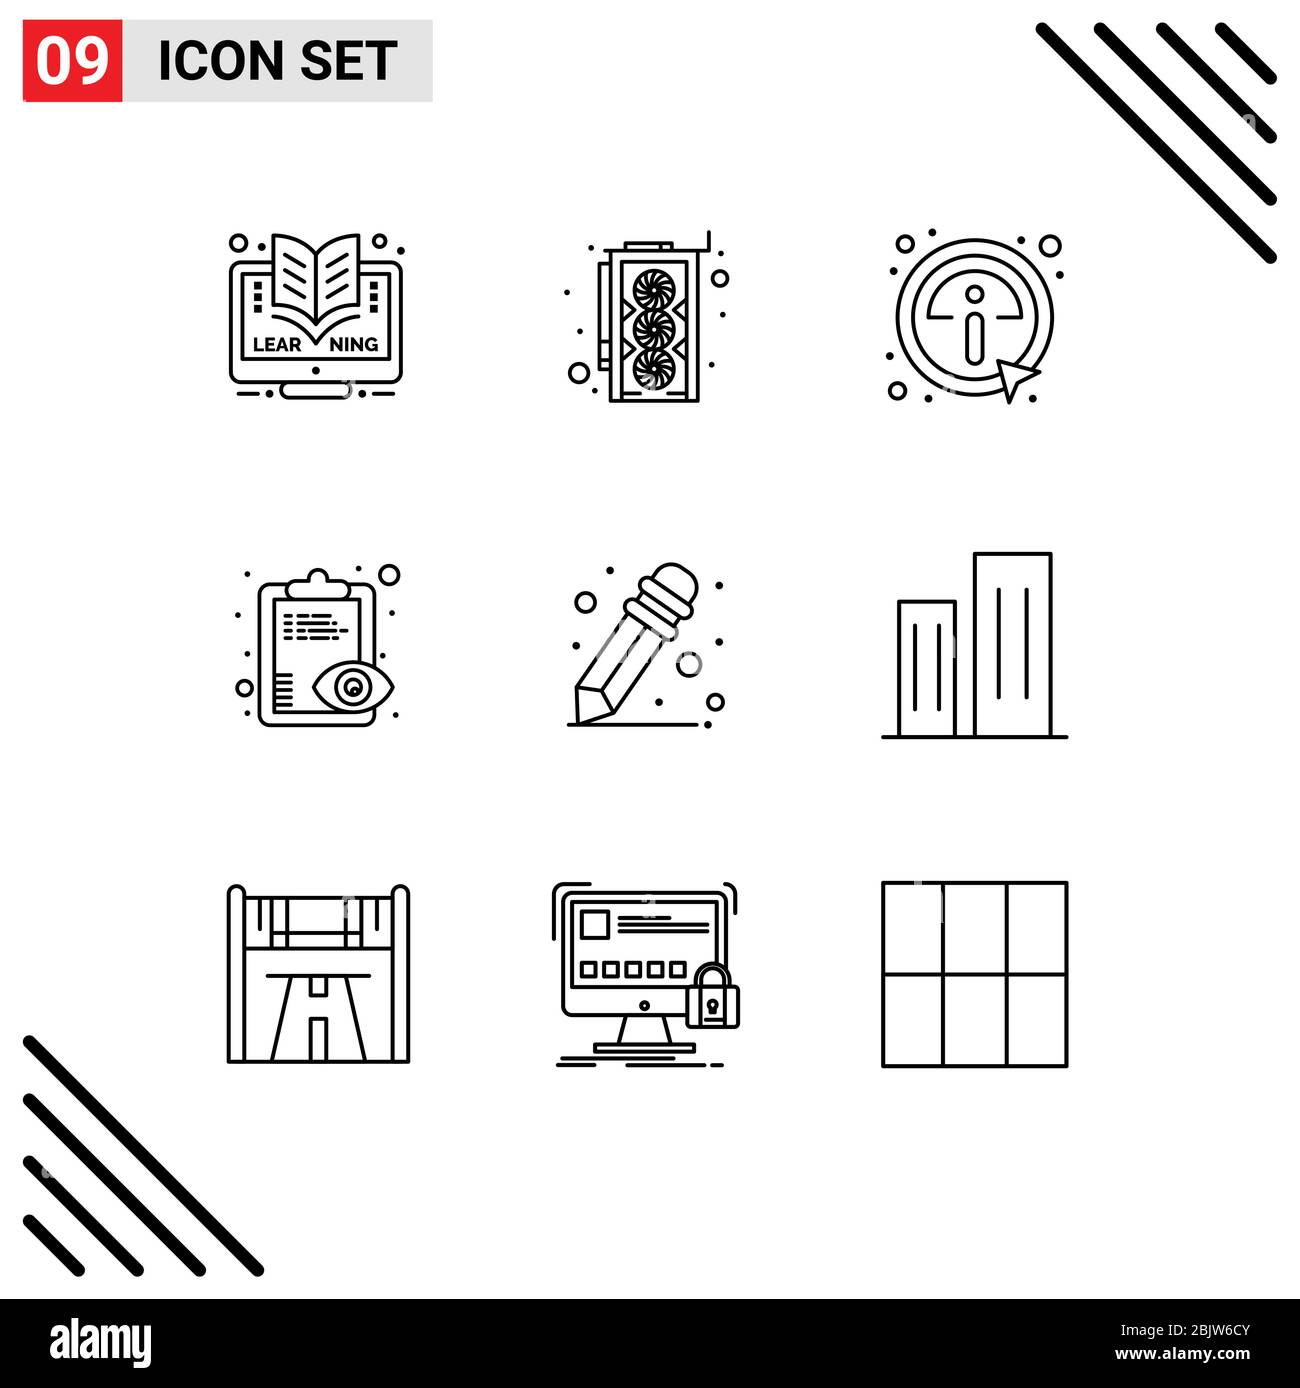 Universal Icon Symbols Gruppo di 9 moderni profili di architettura, matita, dettagli, appunti, panoramica elementi di progettazione vettoriale editabili Illustrazione Vettoriale